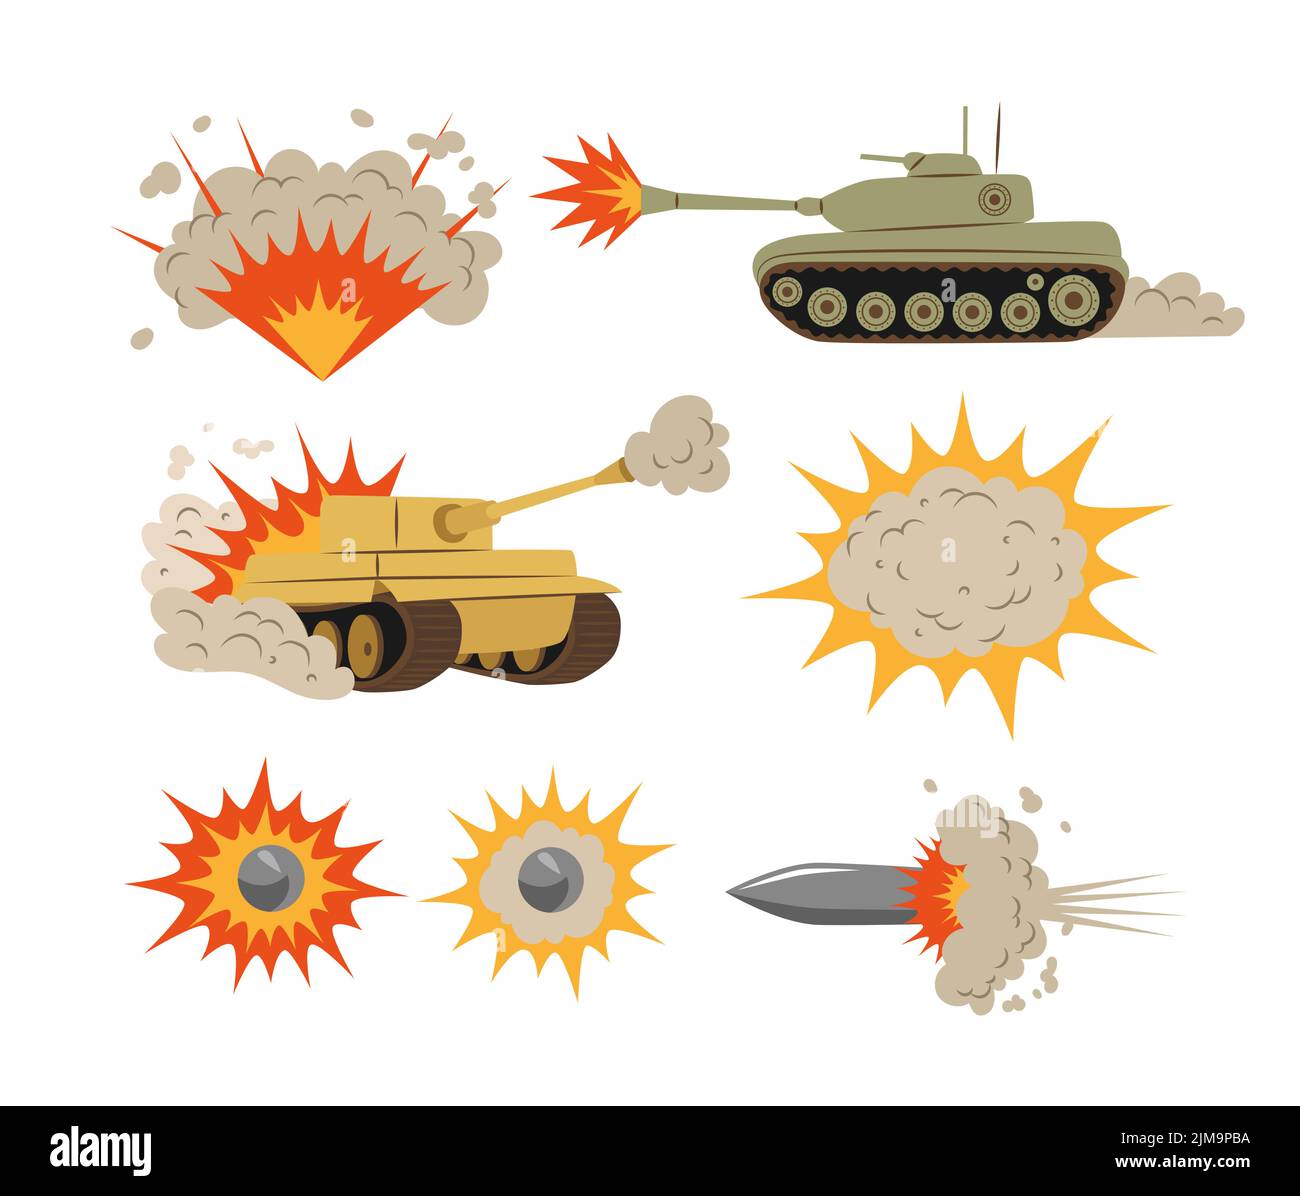 Conjunto de ilustraciones de vectores de explosiones y tanques de tiro. Colección de dibujos animados de explosiones de bombas, fuego, nubes de humo tras explosión, balas de arma Ilustración del Vector